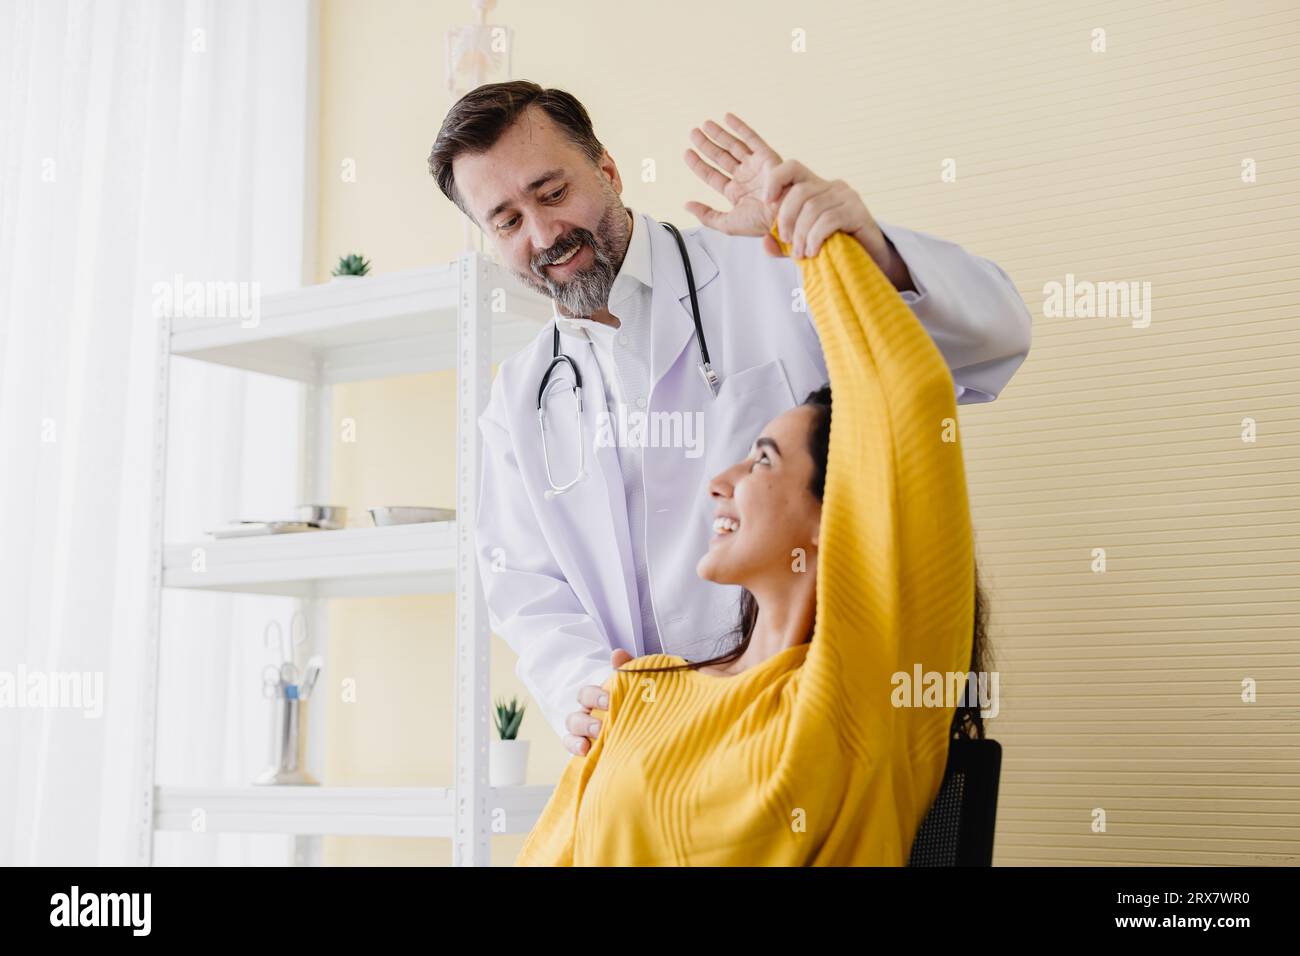 Patient Frau Armmuskelschmerzen Treffen Sie Senior Arzt für Physiotherapie Heilung und Erholung zurück gut arbeiten und sie sehr glücklich Stockfoto